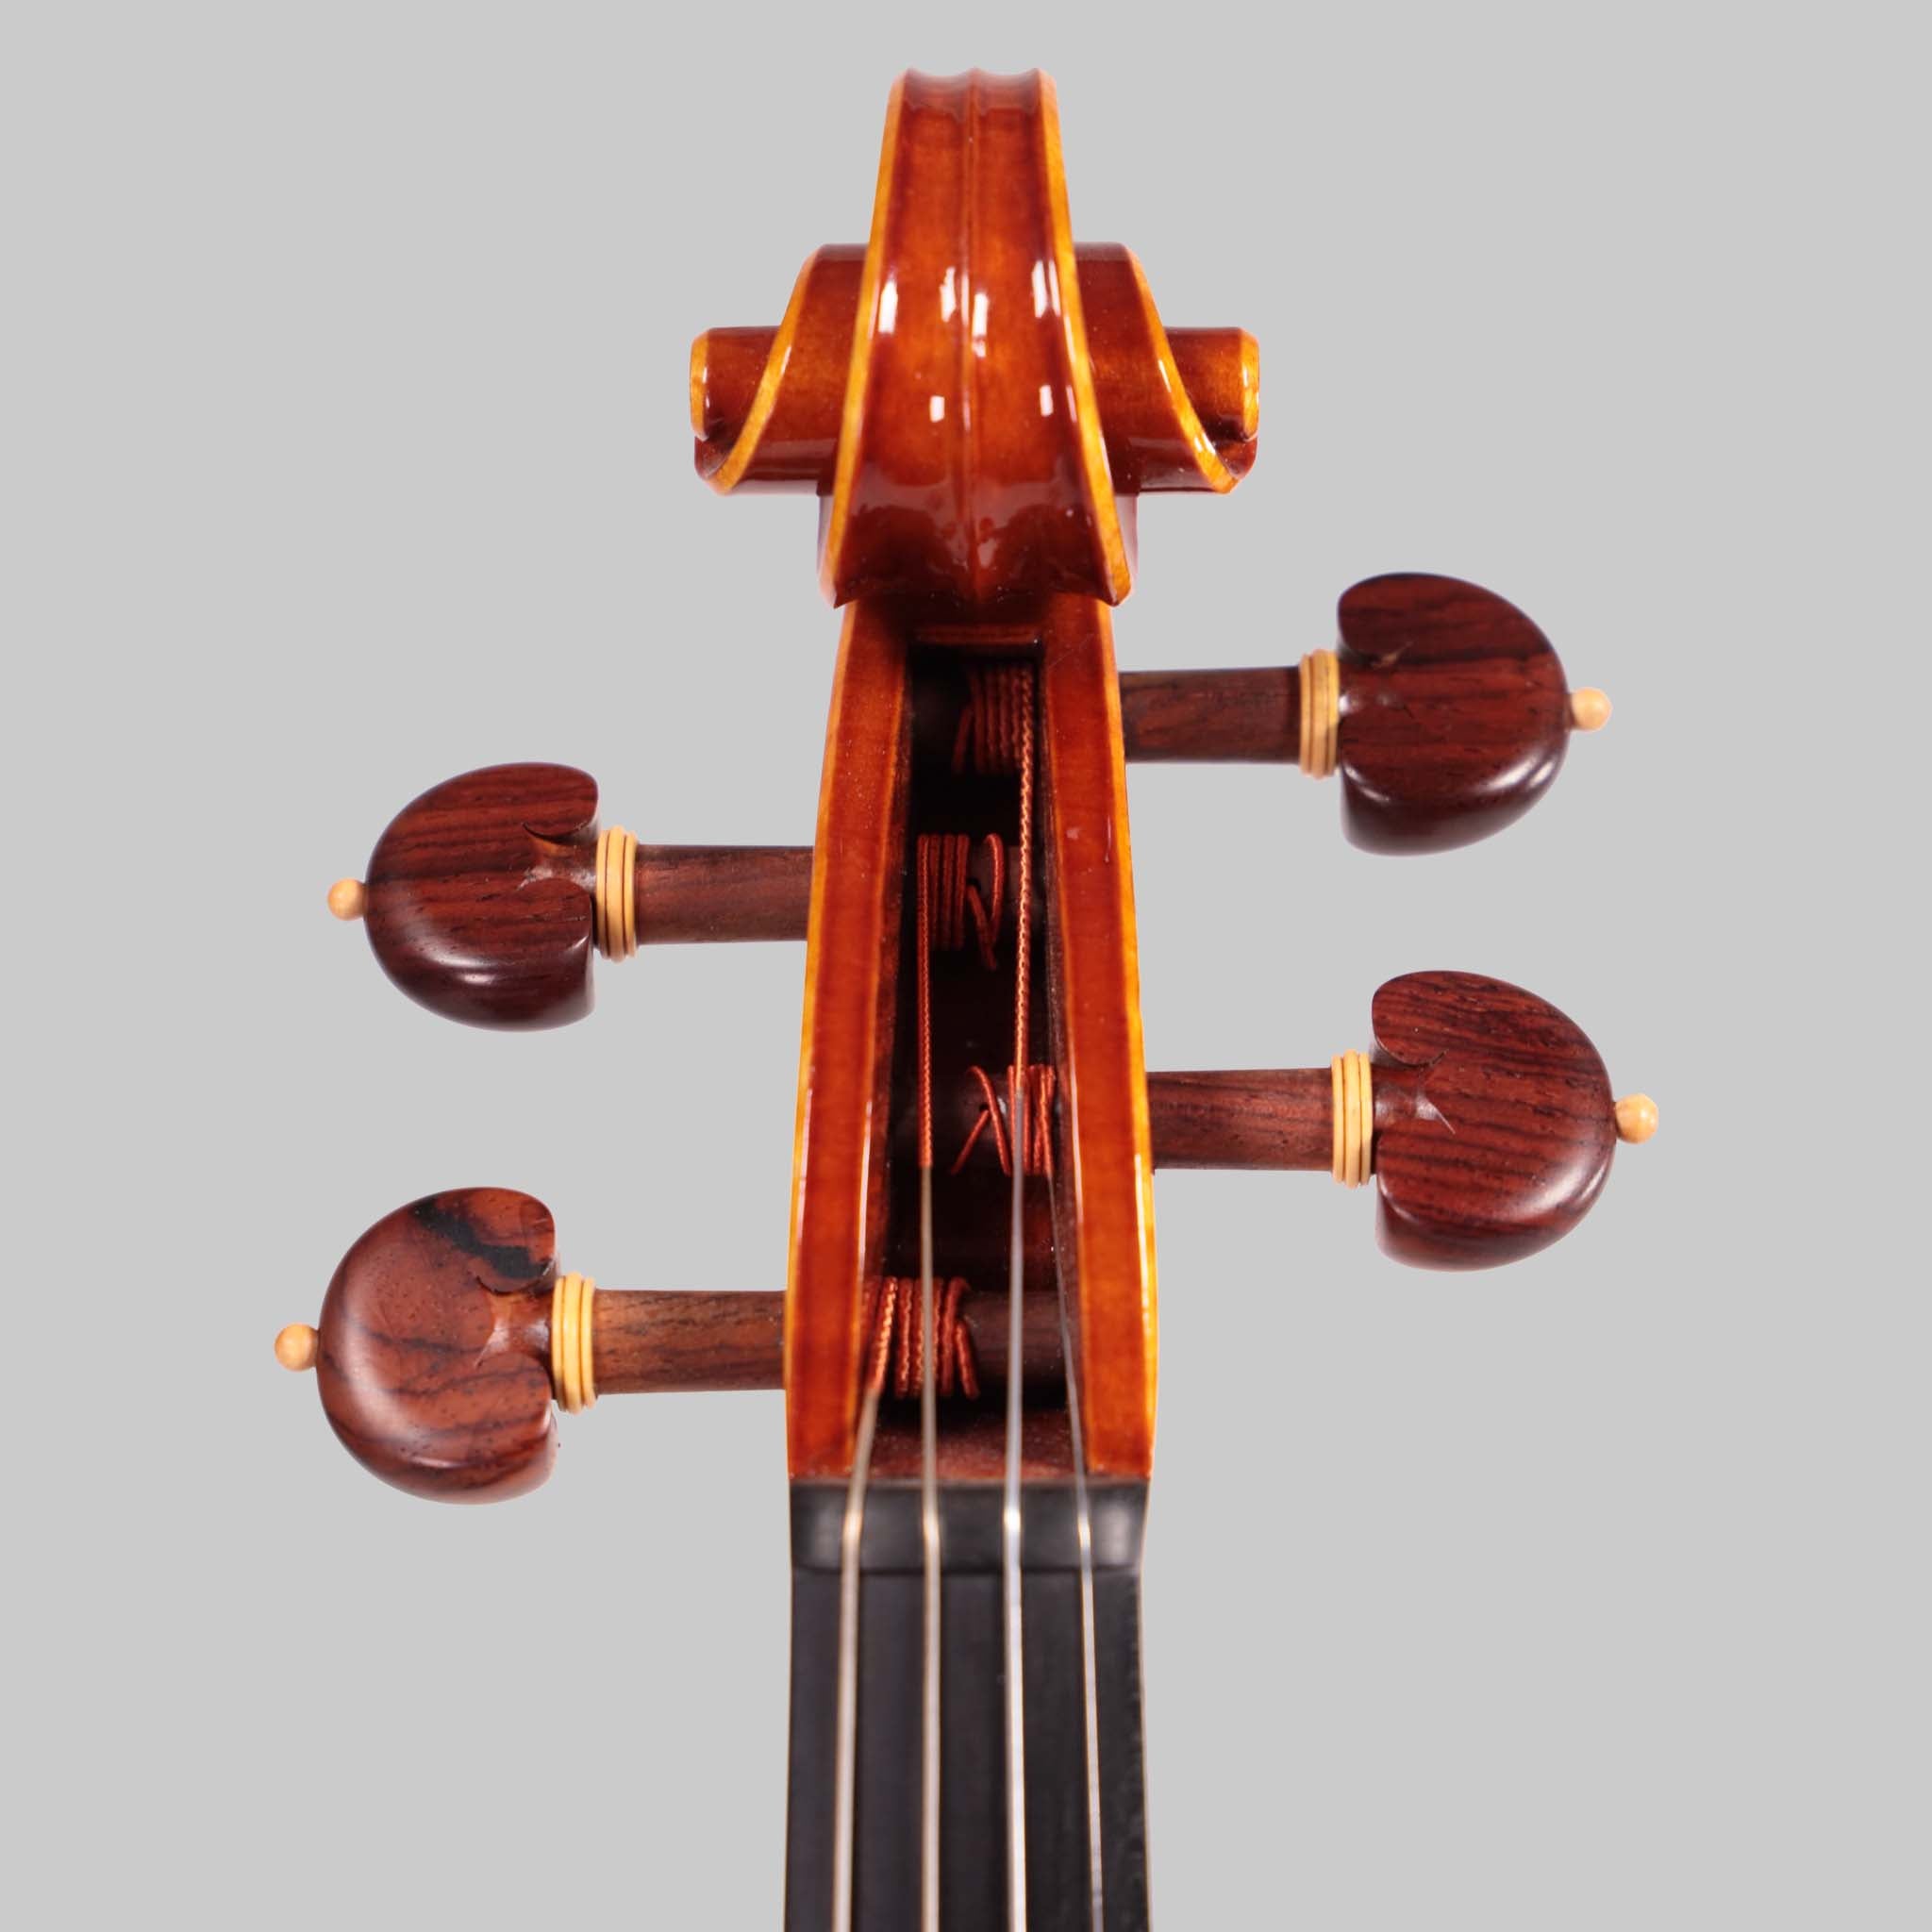 Marco Cargnelutti "Il Toscano" 2020 Violin